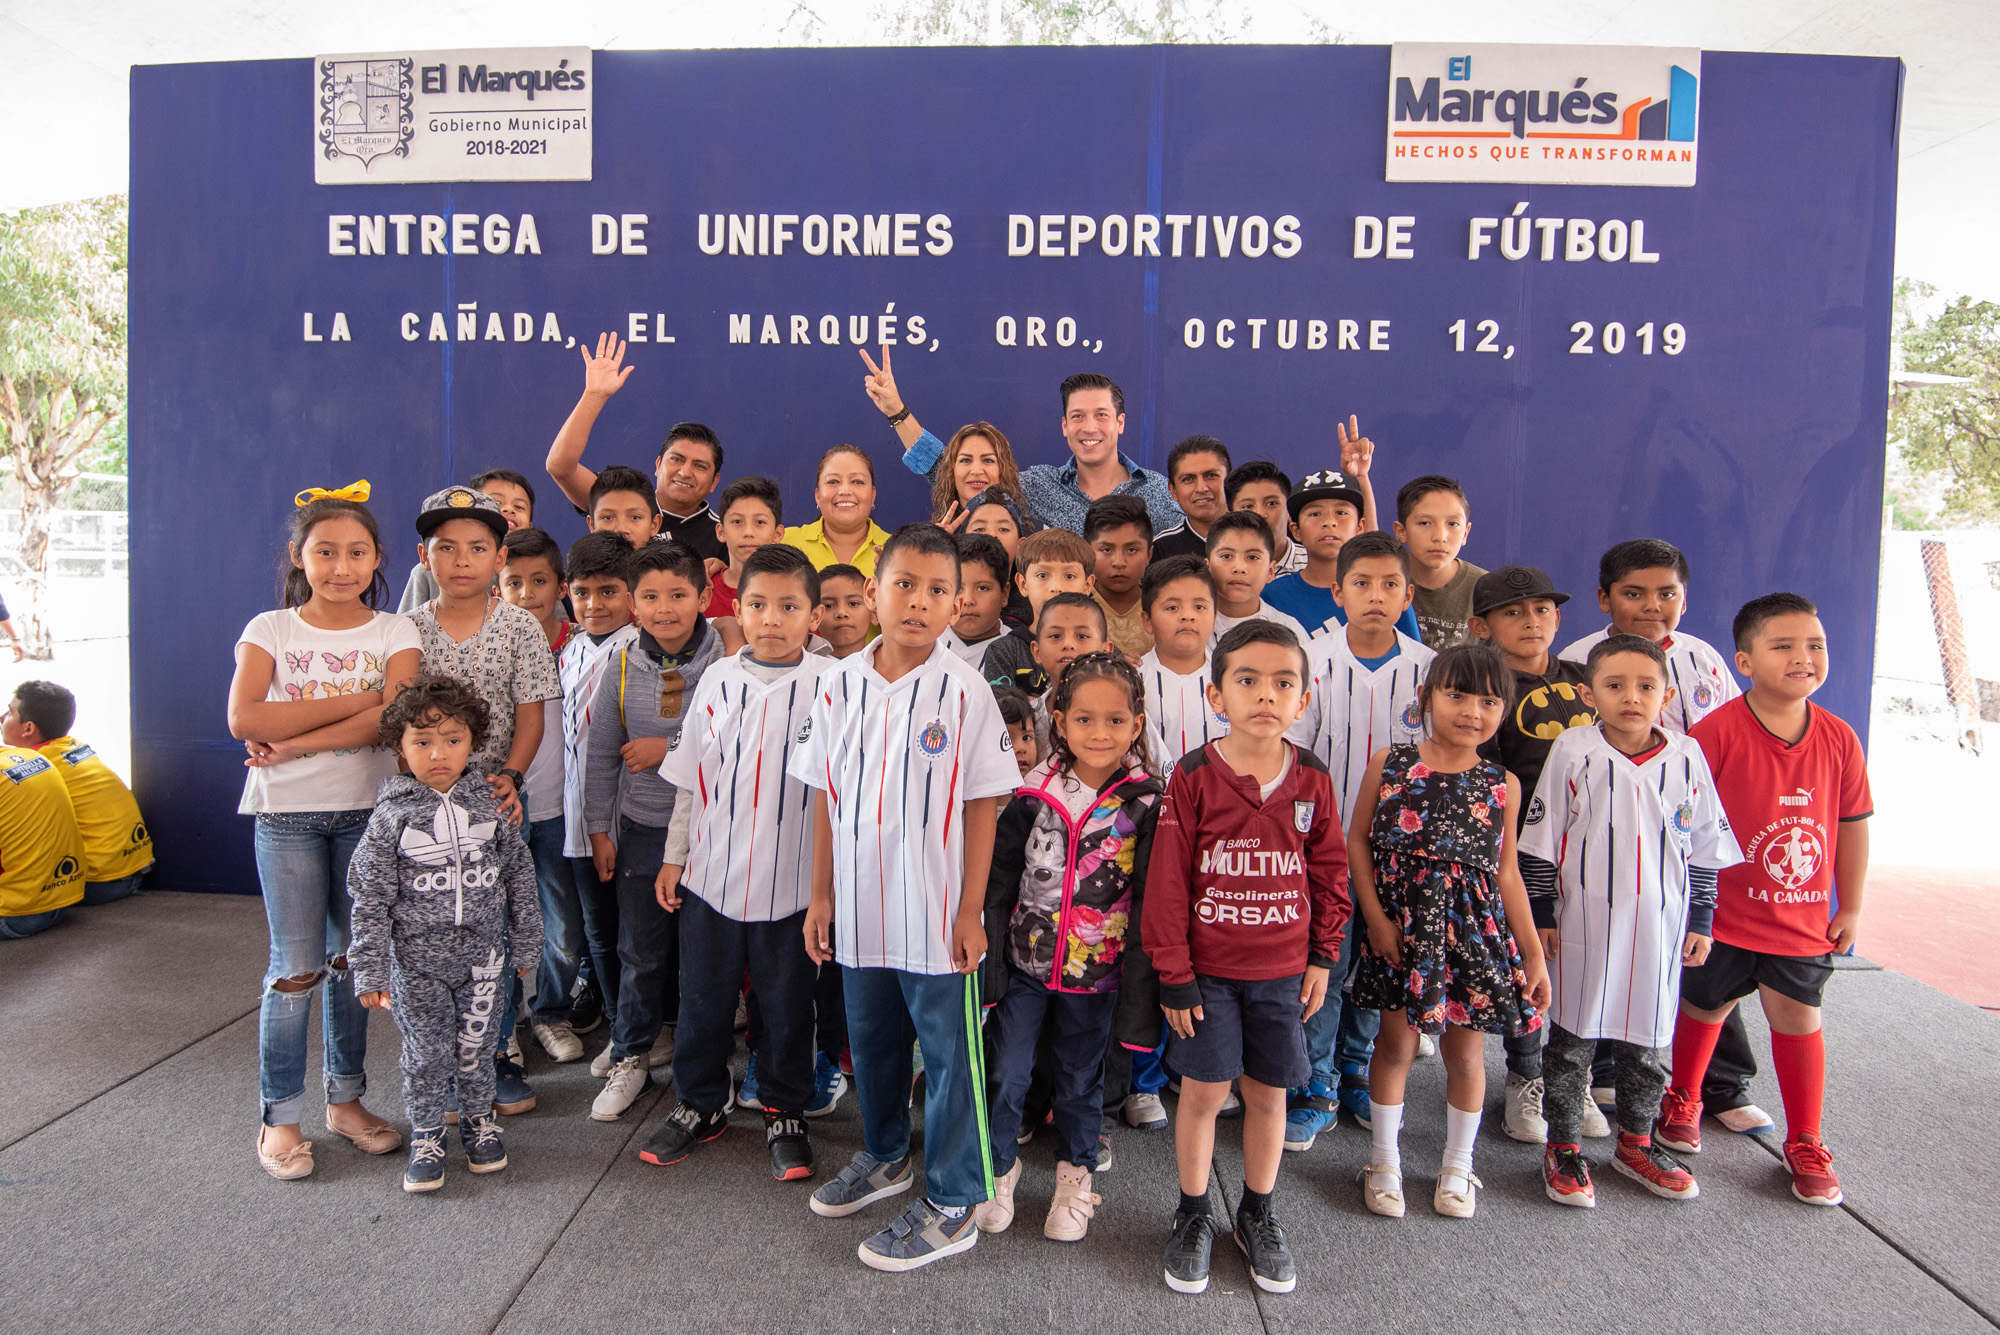 Entregan uniformes deportivos a ligas de futbol en El Marqués.